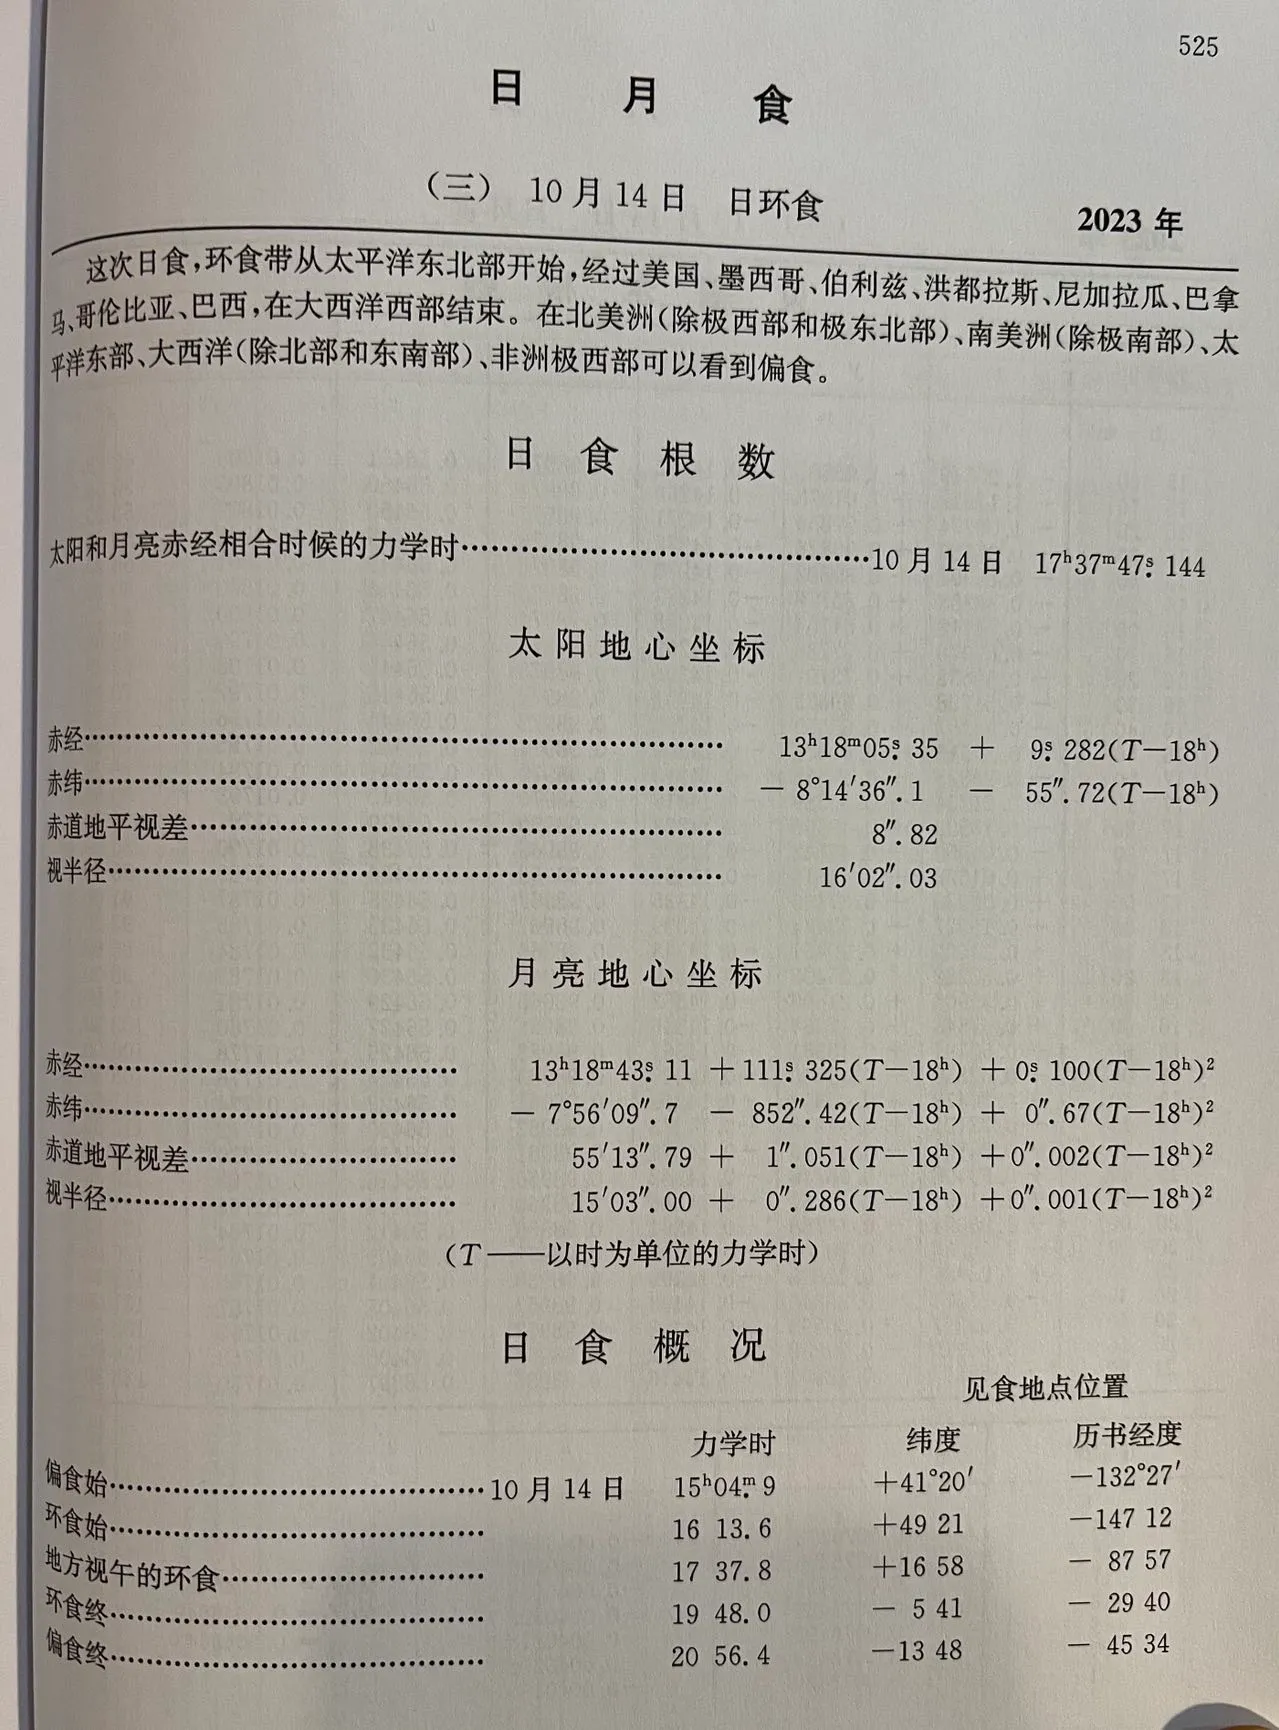 2023年日月食，取自《2023年中国天文年历》